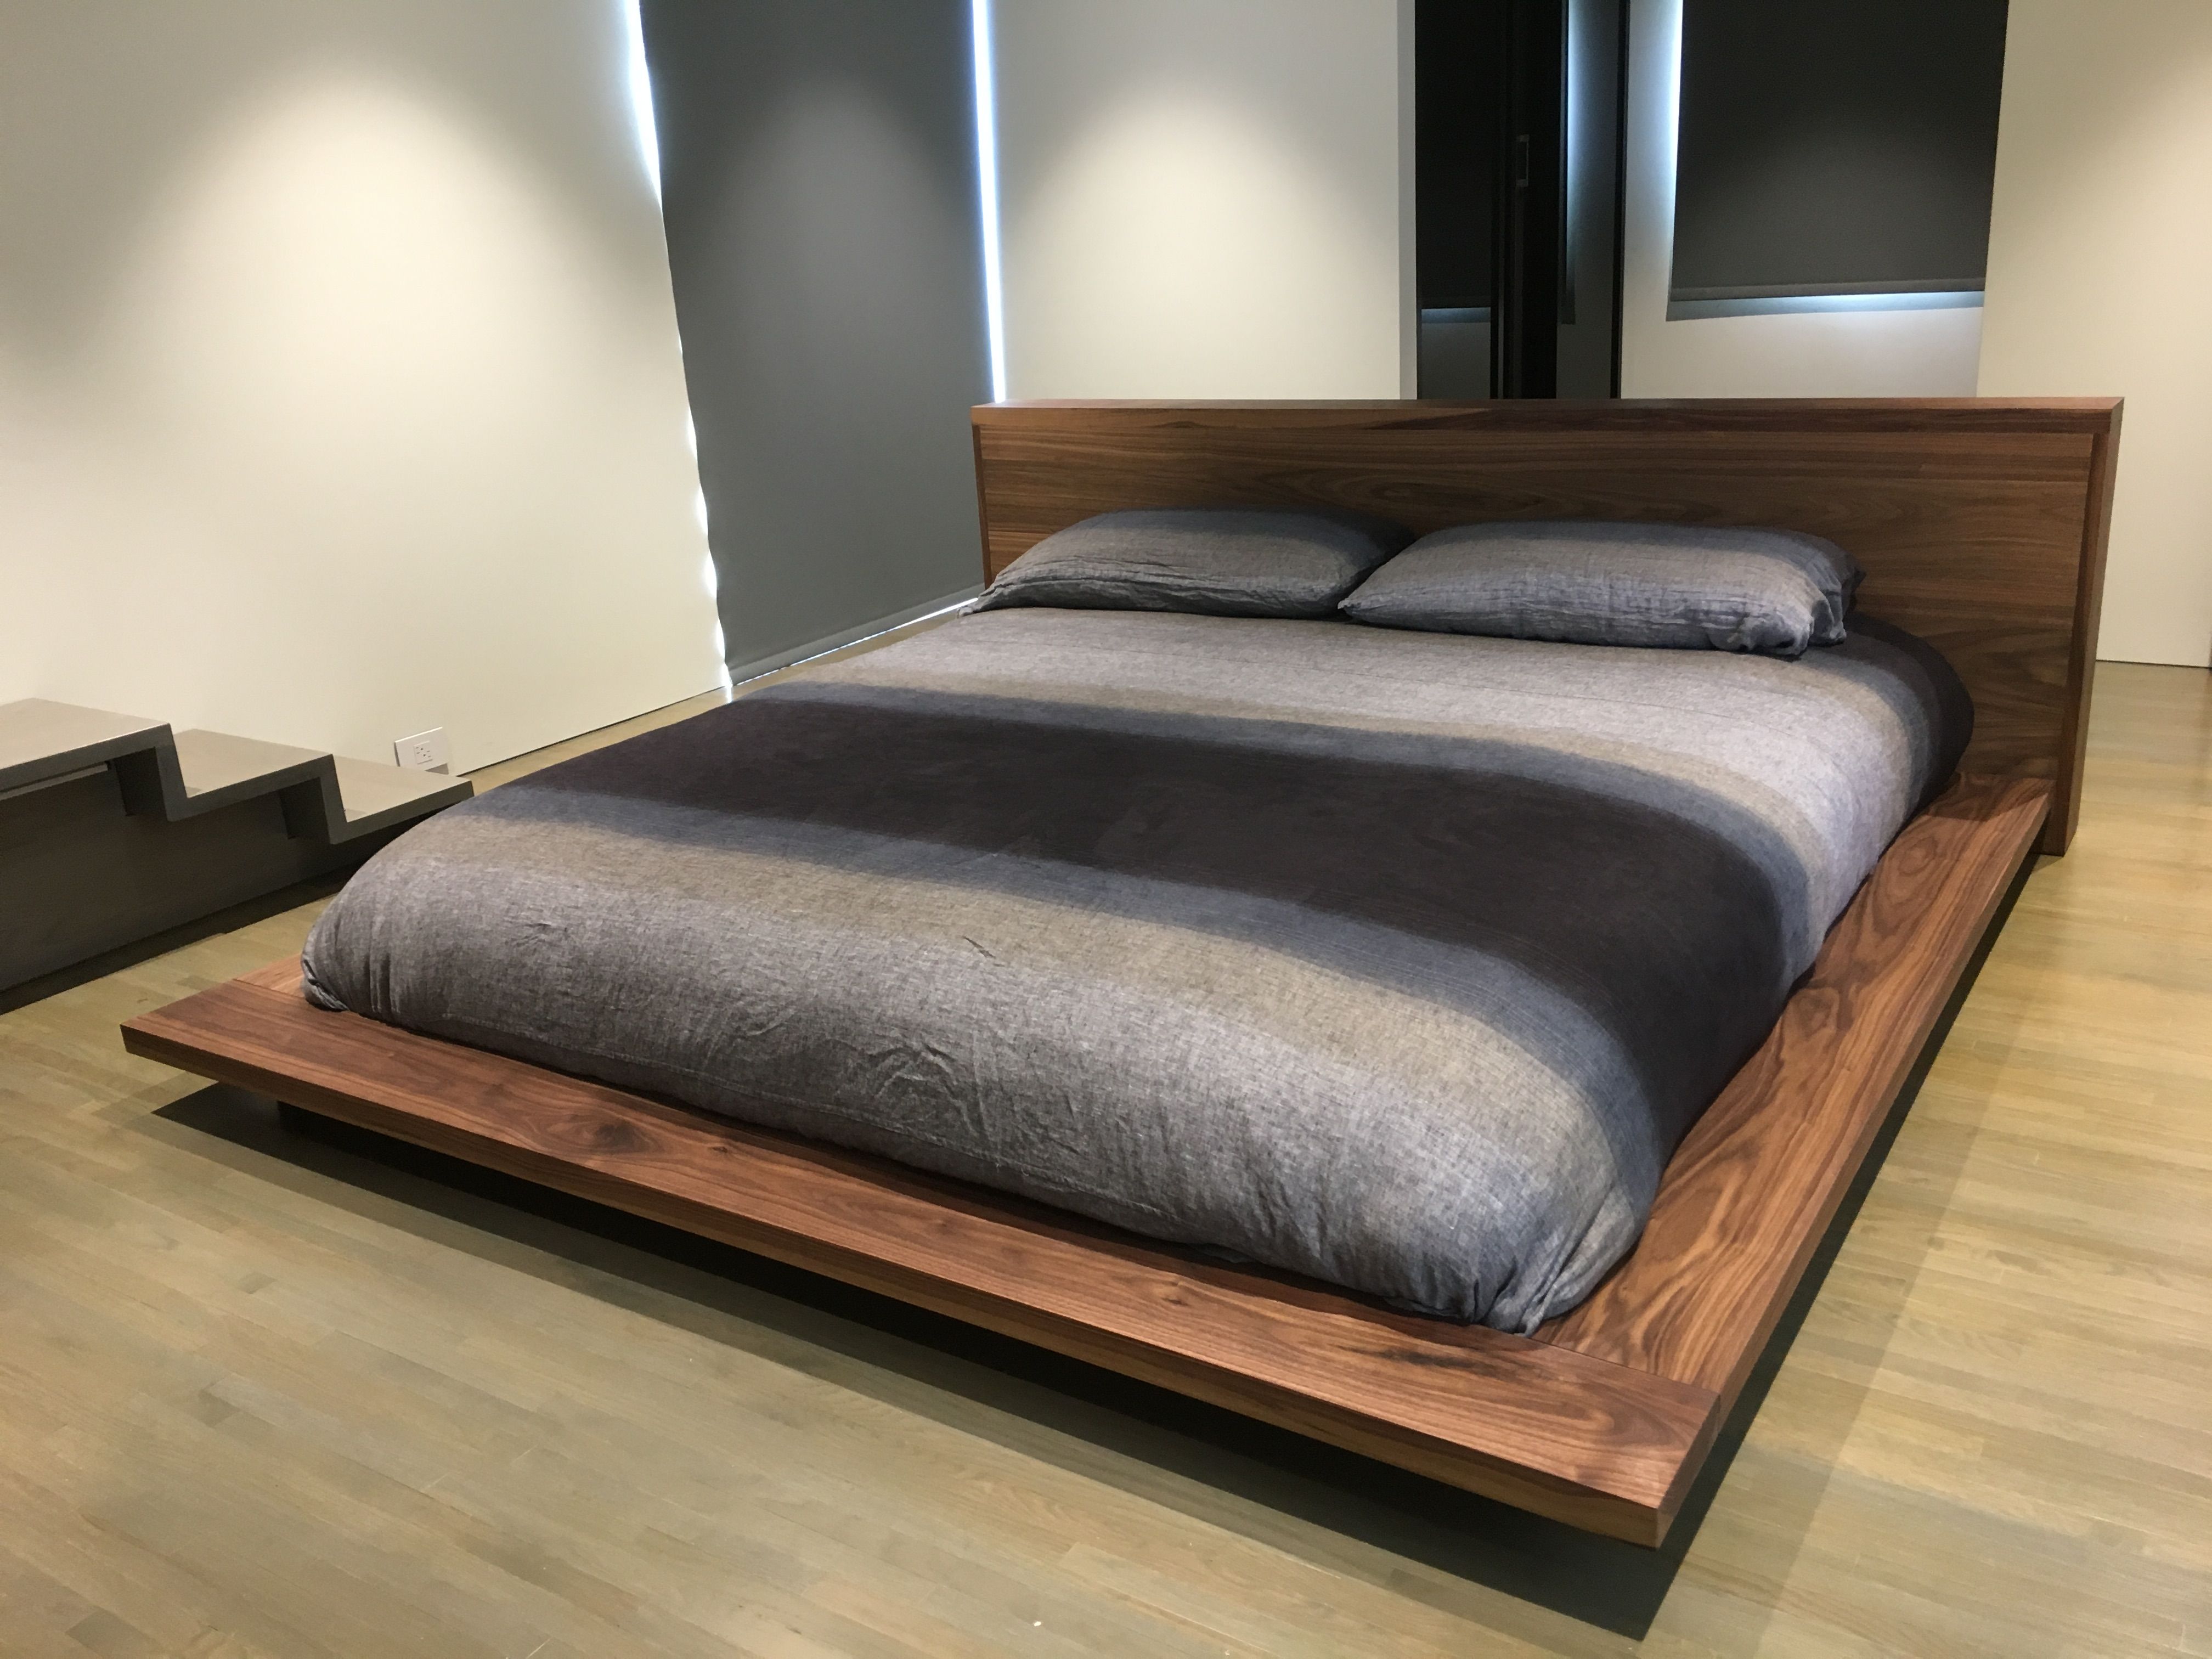 mattress and platform beds